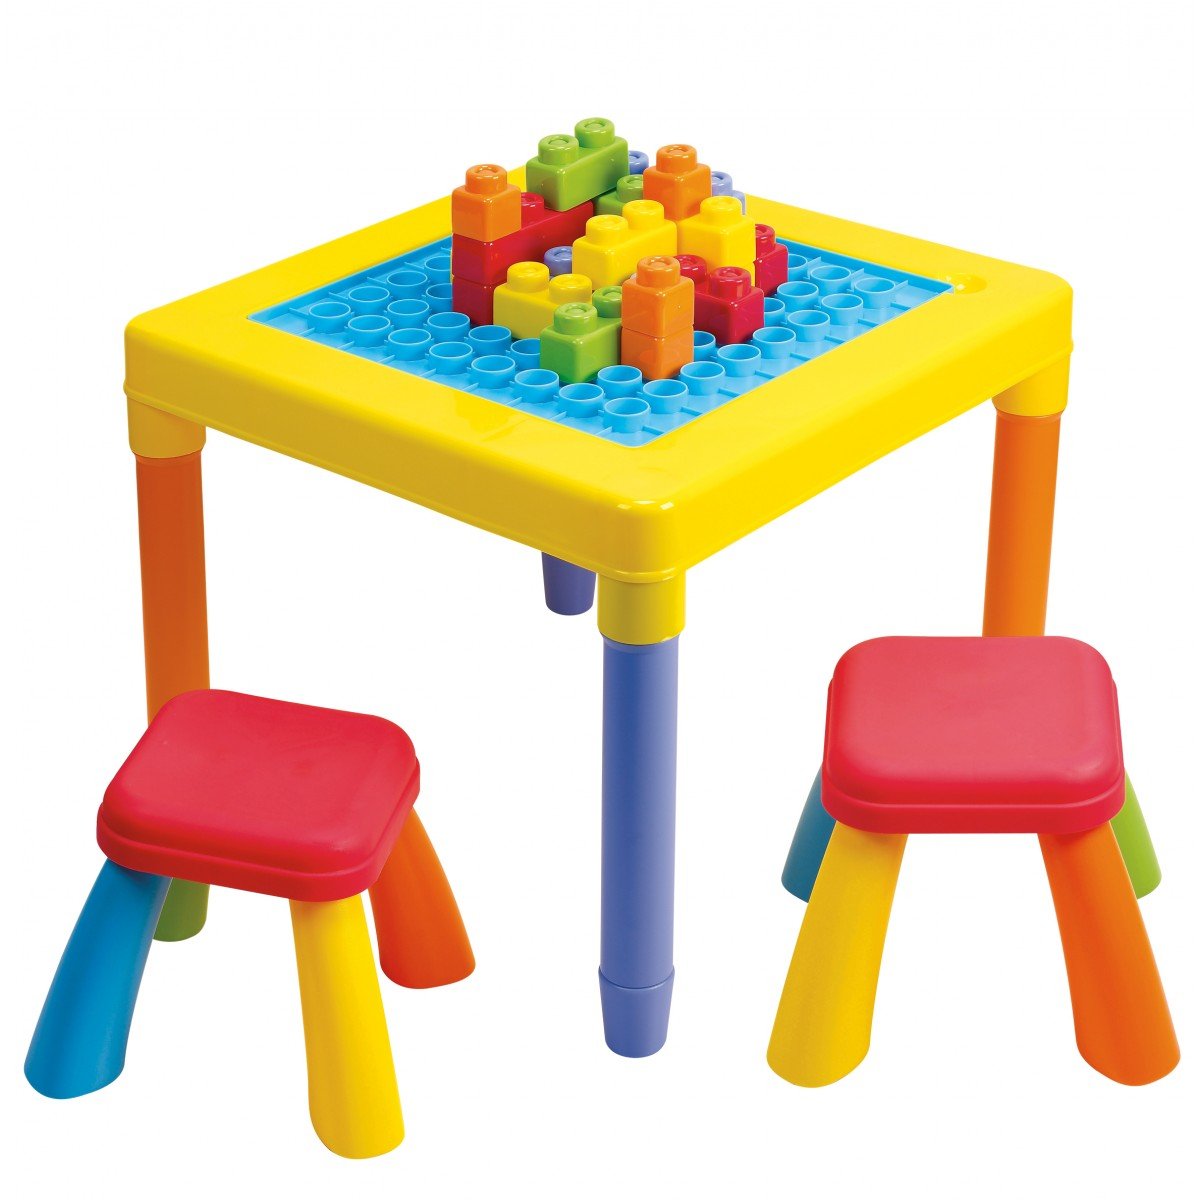 โต๊ะเก้าอี้พร้อมตัวต่อบล๊อก My Play Table (รุ่น 2245) ยี่ห้อ PLAYGO